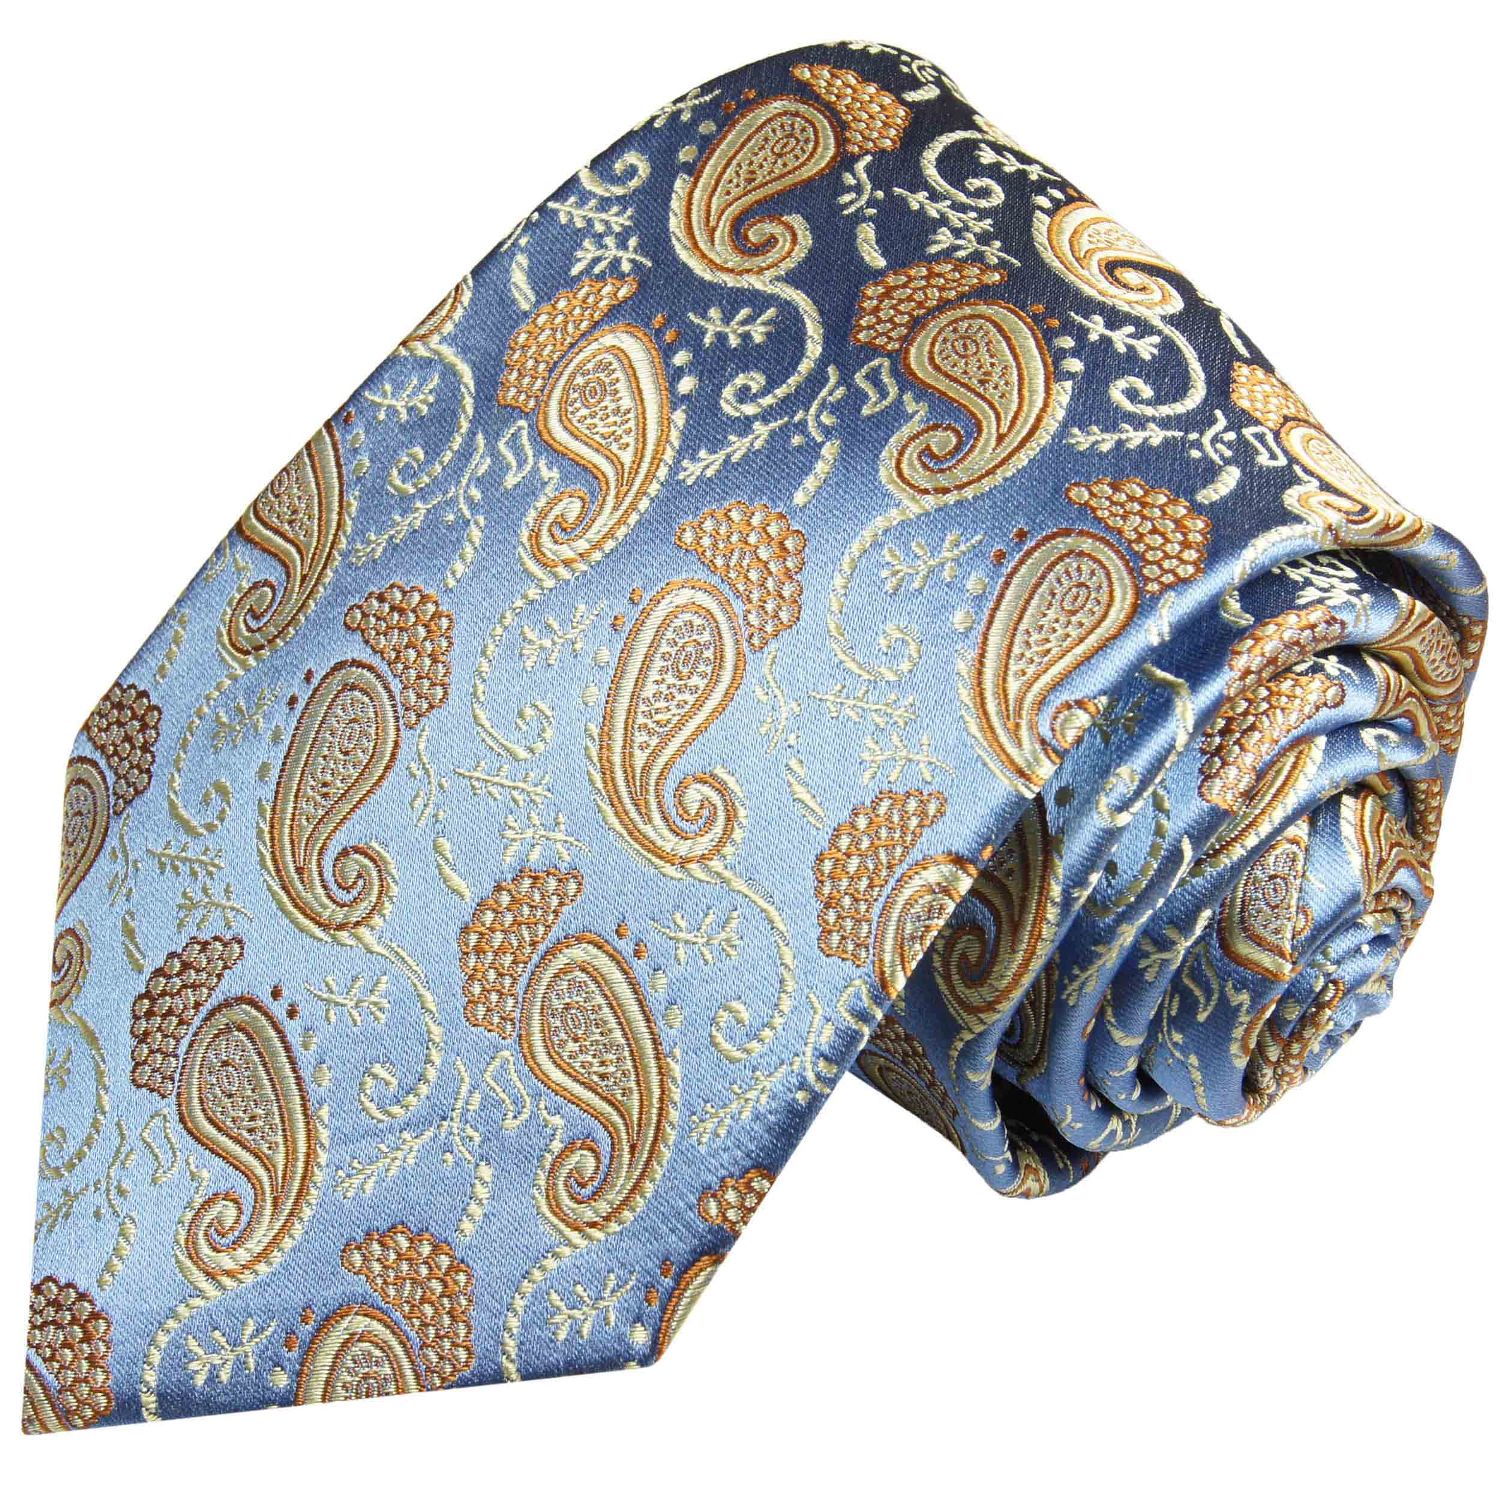 Lorenzo Cana petrol Seidenkrawatte mit Tuch 8442701 Set aus 100% Seide Tuerkise Krawatte mit Einstecktuch Paisley